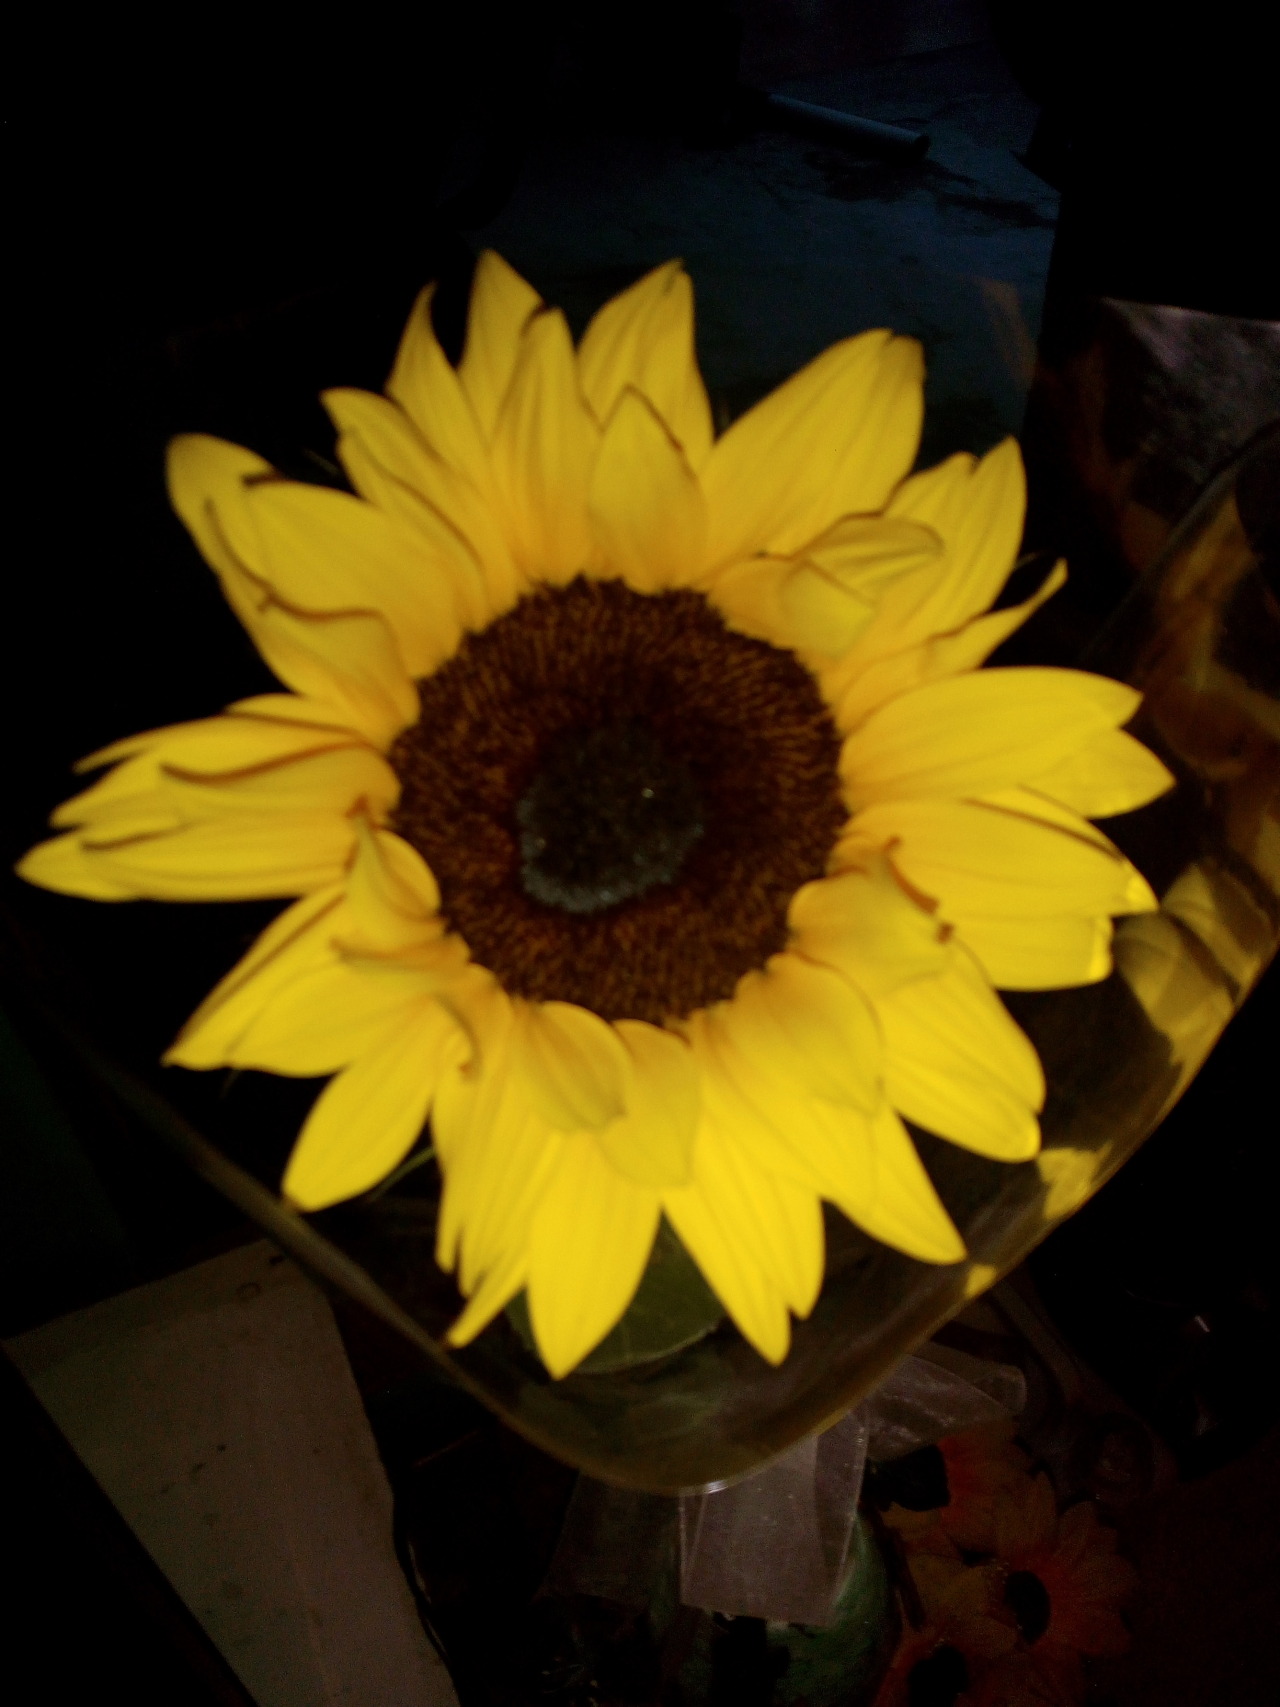 tengonovioynomiroanadiemas:  En el lenguaje de las flores el girasol significa: “te admiro”. El amarillo significa “eres mi sol” . “Solo tengo ojos para ti, y como el girasol, yo me giraré siempre hacia ti” y el naranja es la fidelidad en